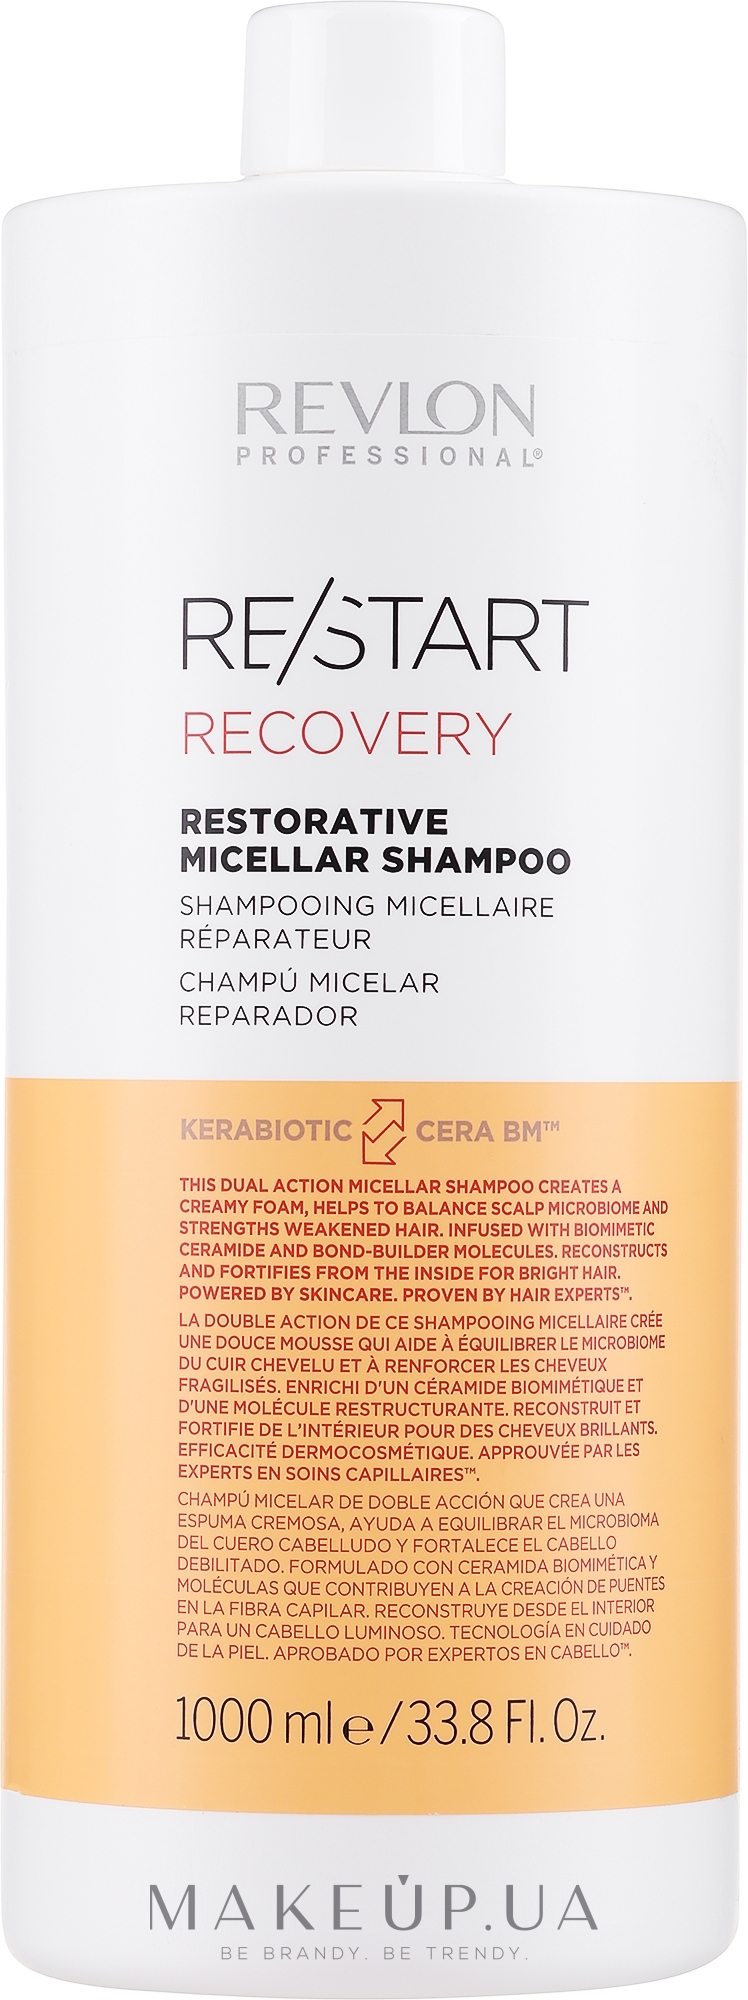 Шампунь для восстановления волос - Revlon Professional Restart Recovery Restorative Micellar Shampoo — фото 1000ml